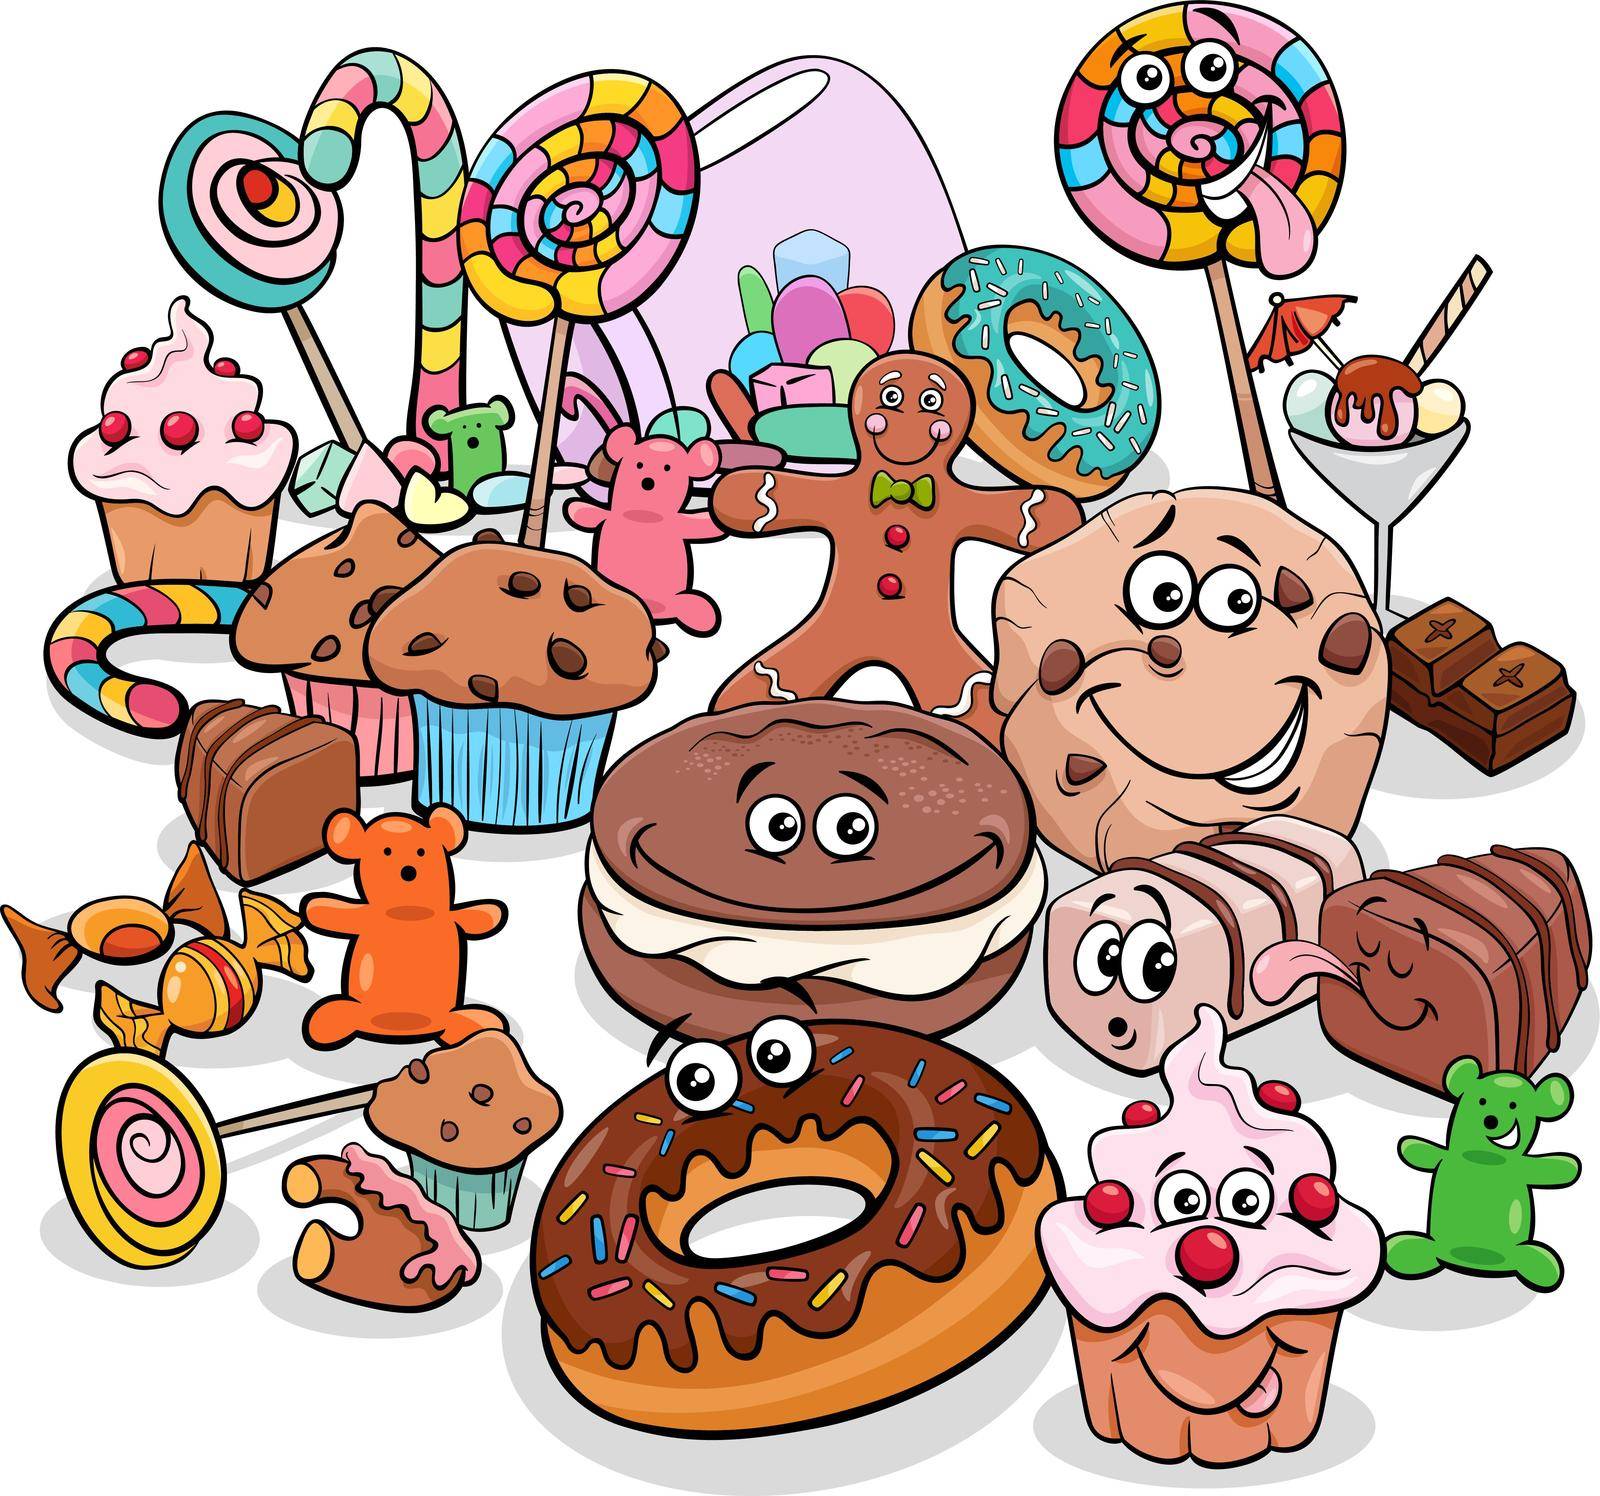 cartoon sweet food objects characters group by izakowski